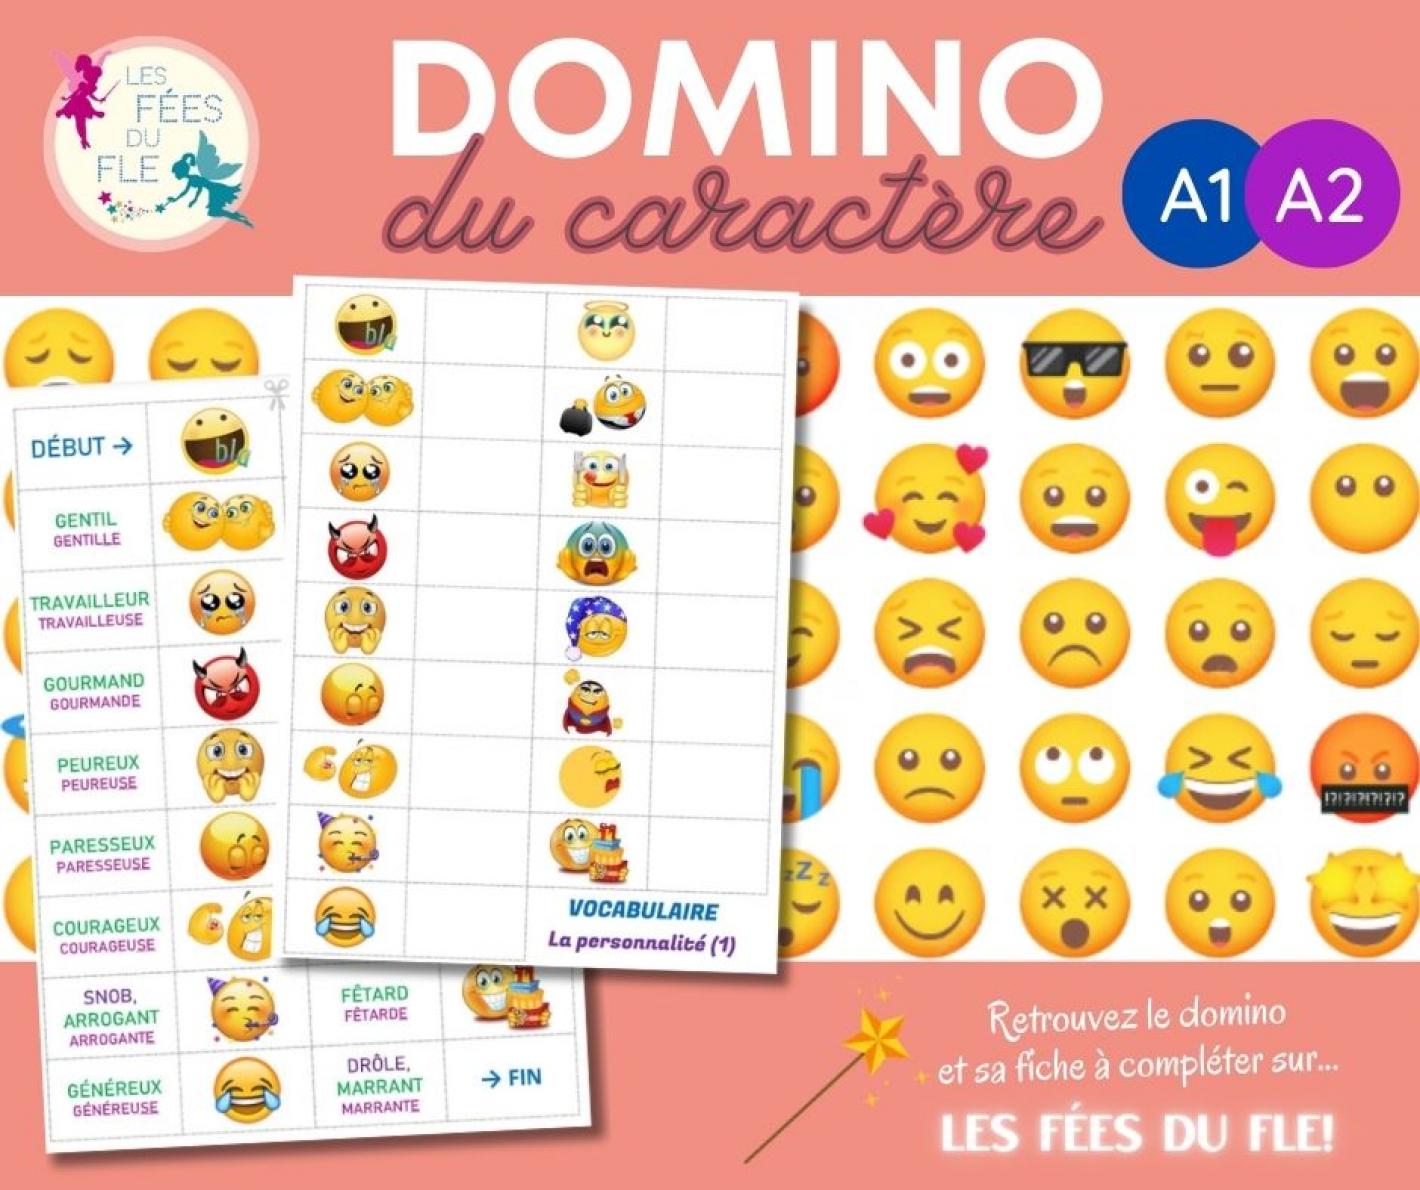 Domino til træning af franske sprogfærdigheder